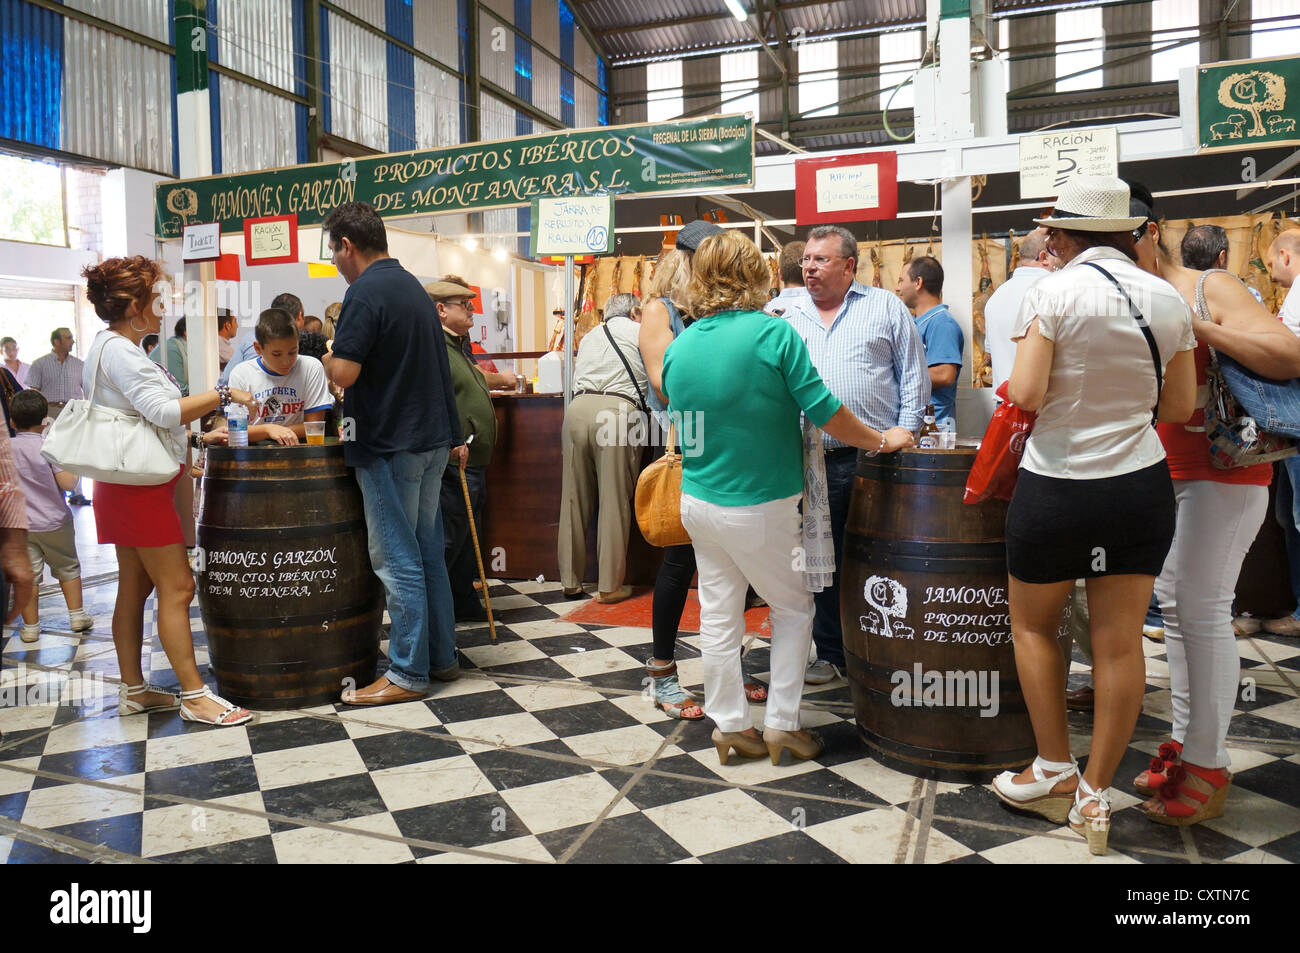 Los participantes visitan Feria Internacional de Ganadería exposición agro-industrial, área Agro-Food productos, en Zafra, España Foto de stock